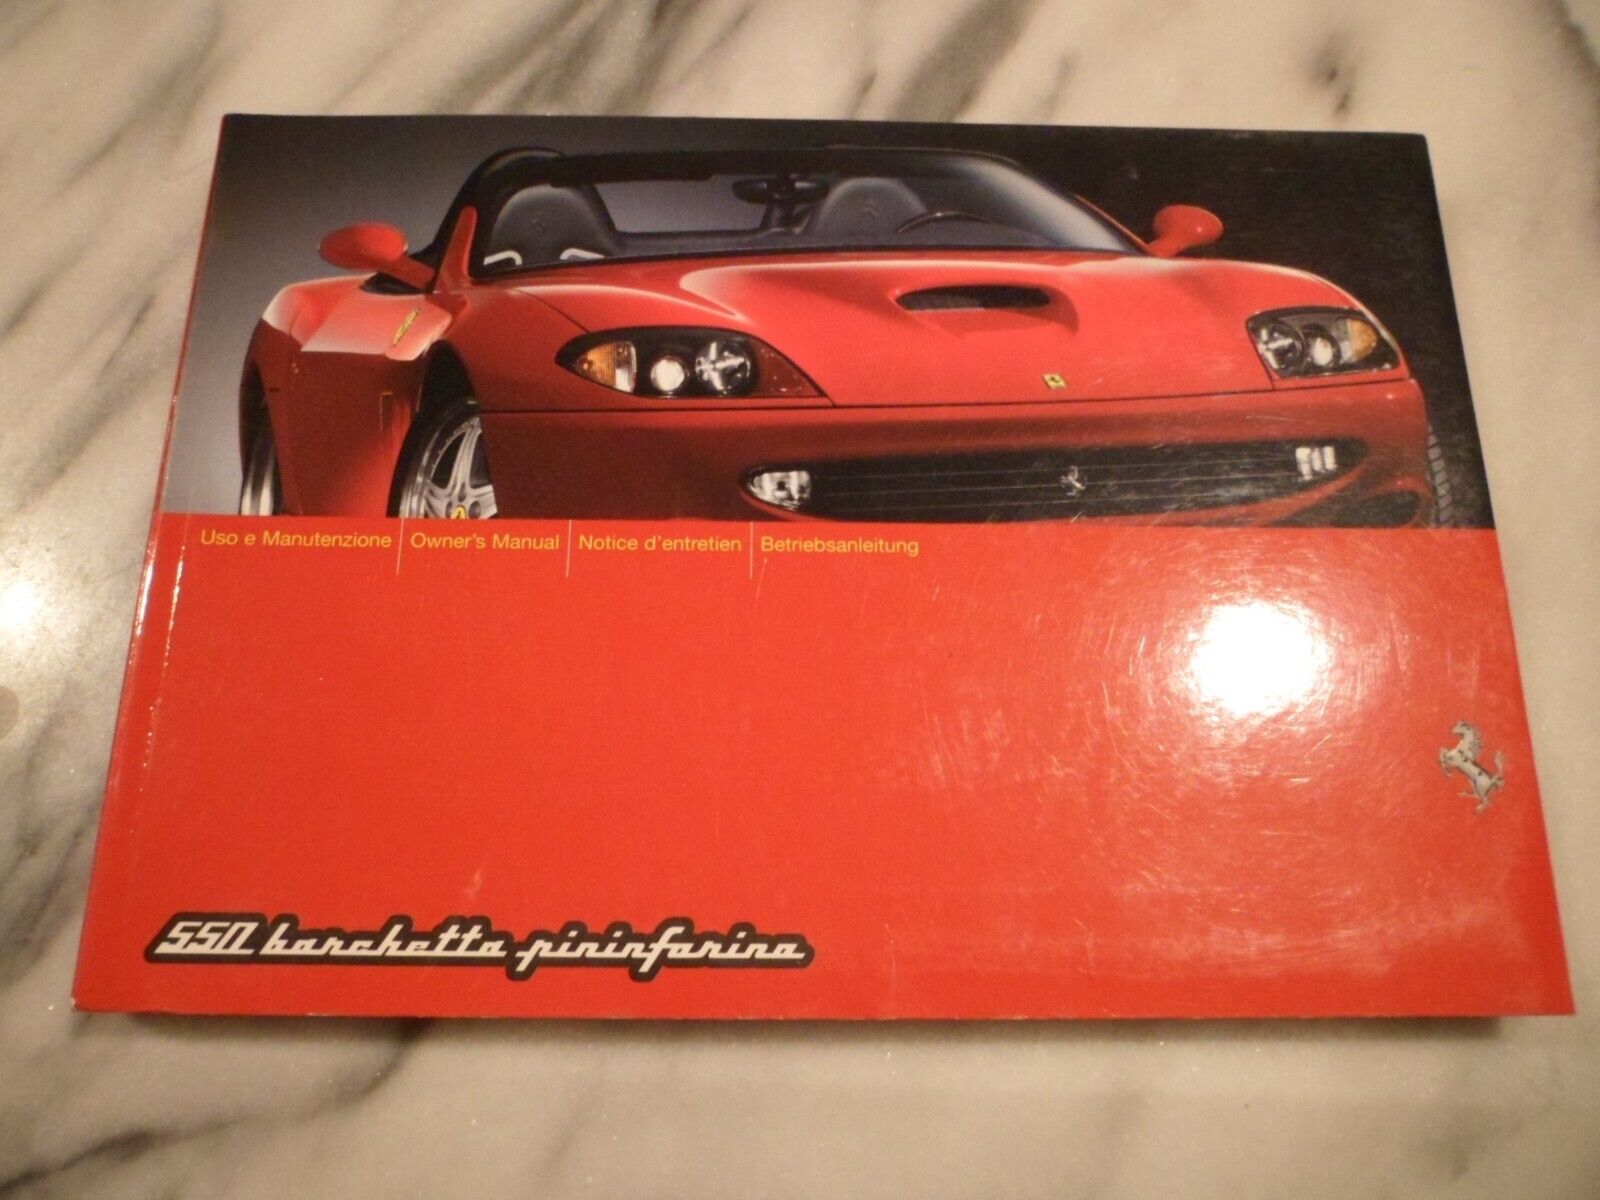 2001 Ferrari 550 Barchetta Pininfarina Owners Manual